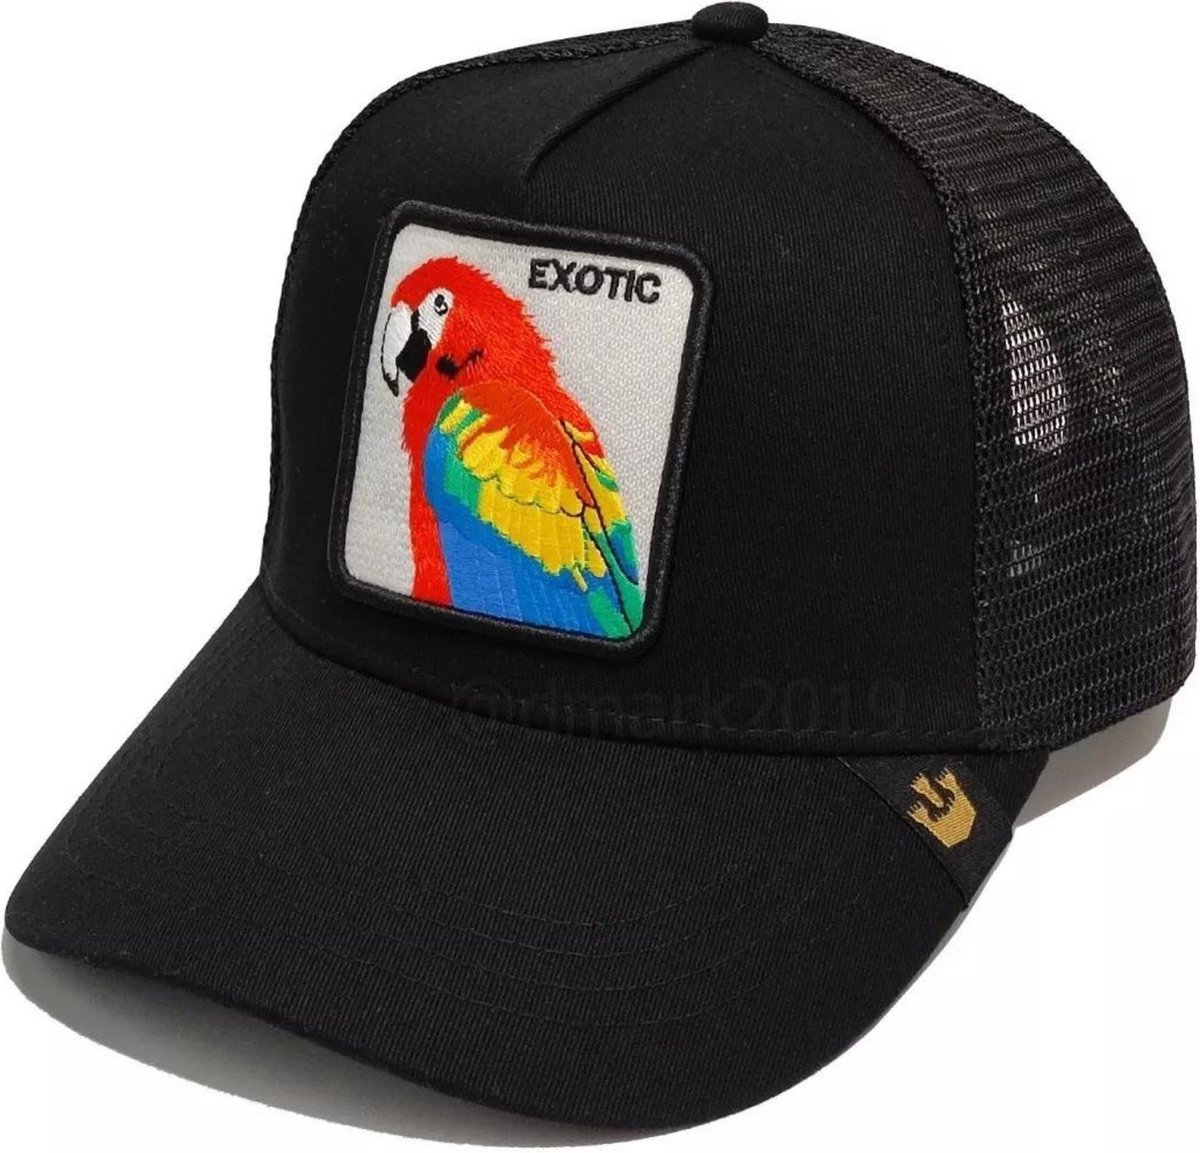 Goorin Bros Cap - Exotic - Black - One Size - Trucker Cap - Pet Heren - Petten - Caps